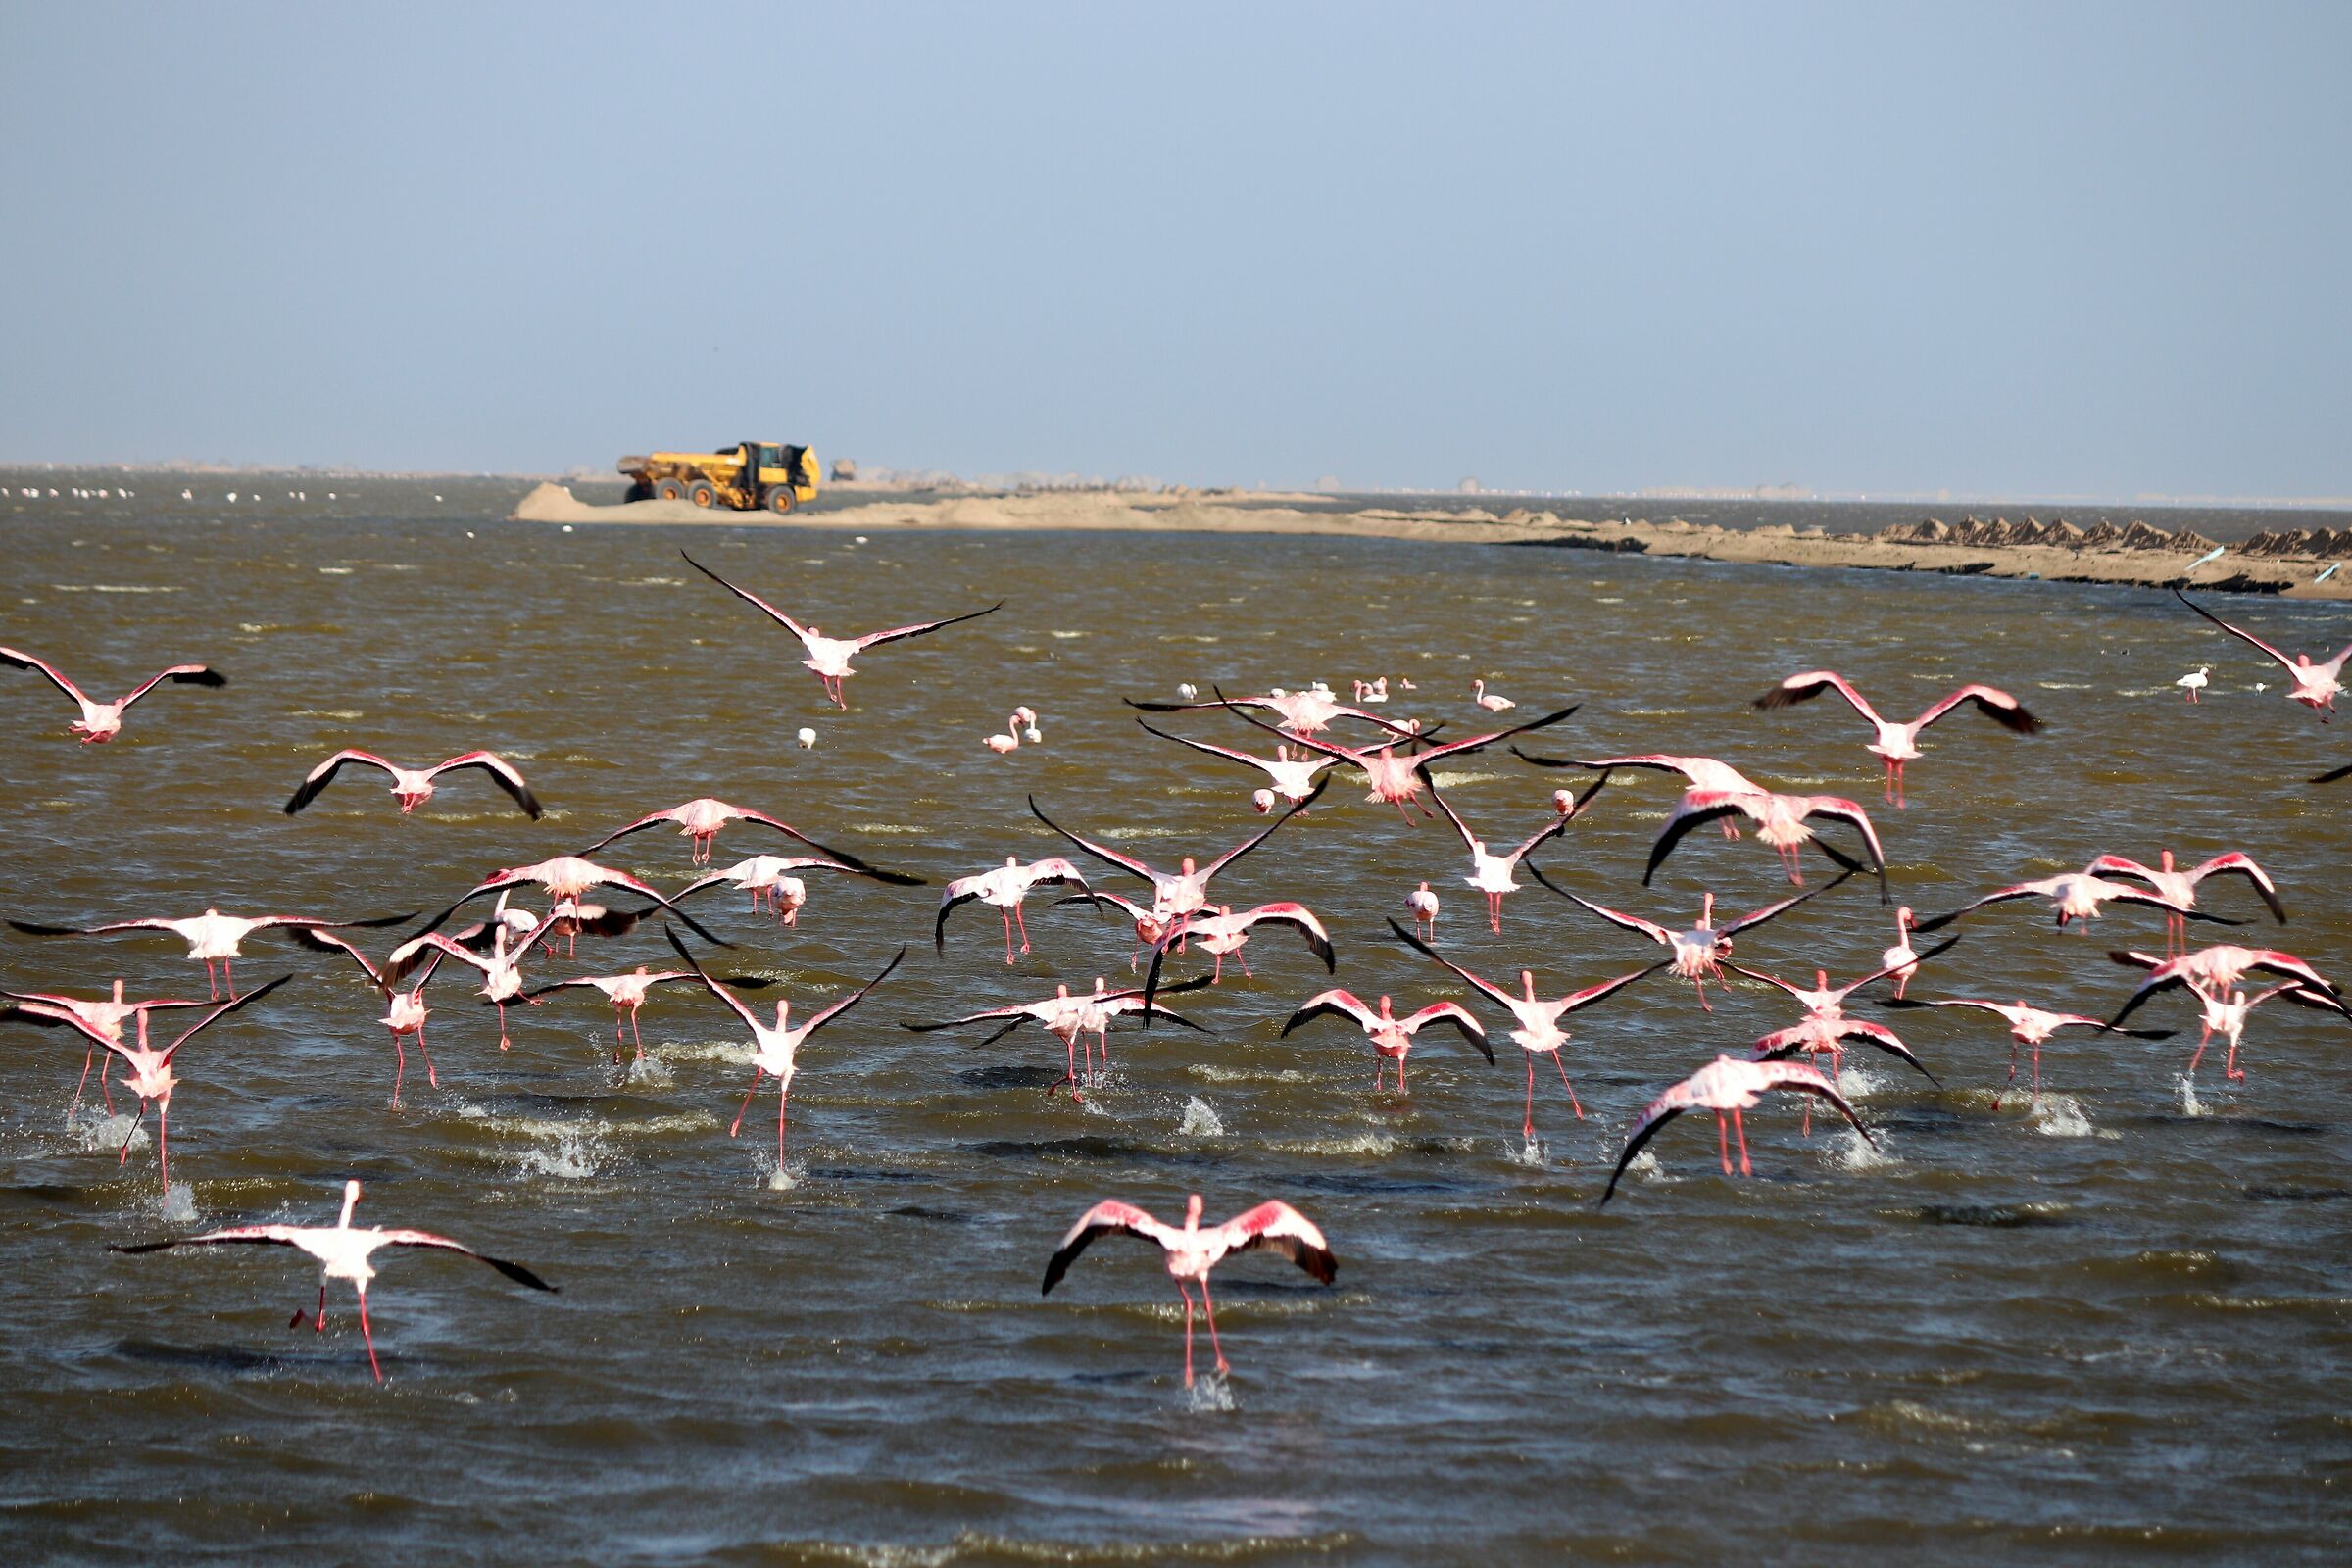 Namibian pink flamingos in flight...